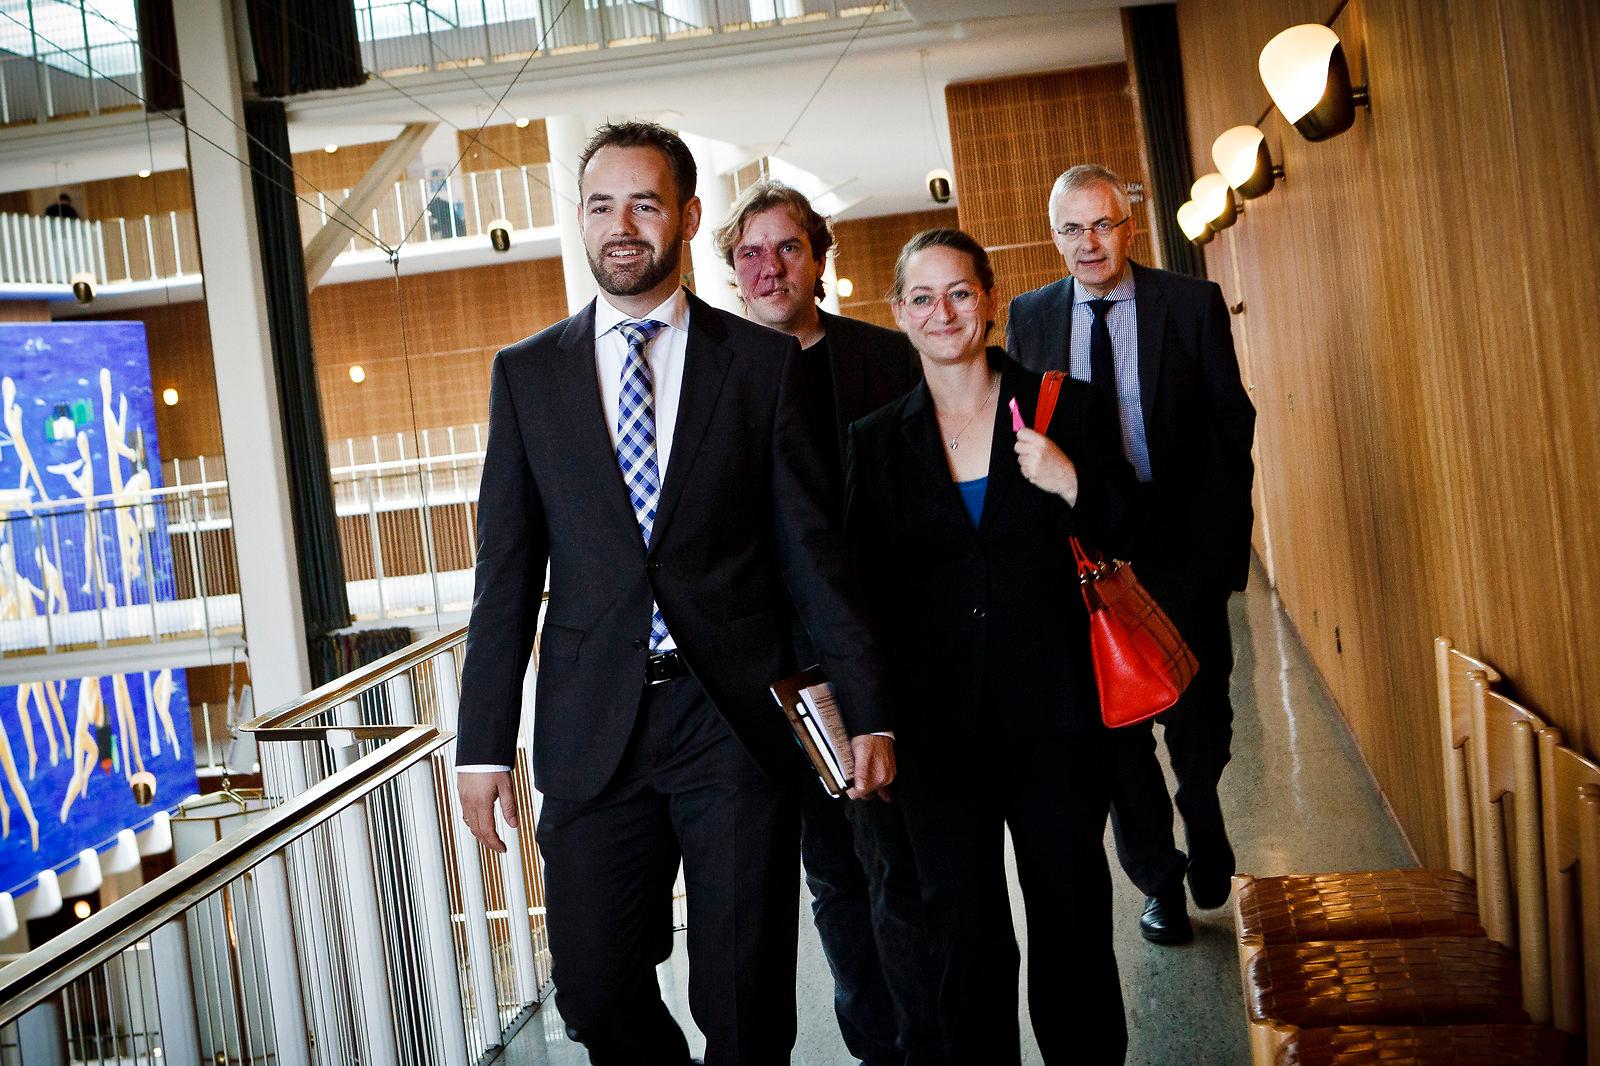 Niels Højberg (yderst til højre) har som øverste embedsmand i både regional og kommunal sammenhæng haft dagligt samarbejde med den politiske ledelse - nu arbejder han med ny forskning om emnet for Aarhus Universitet.